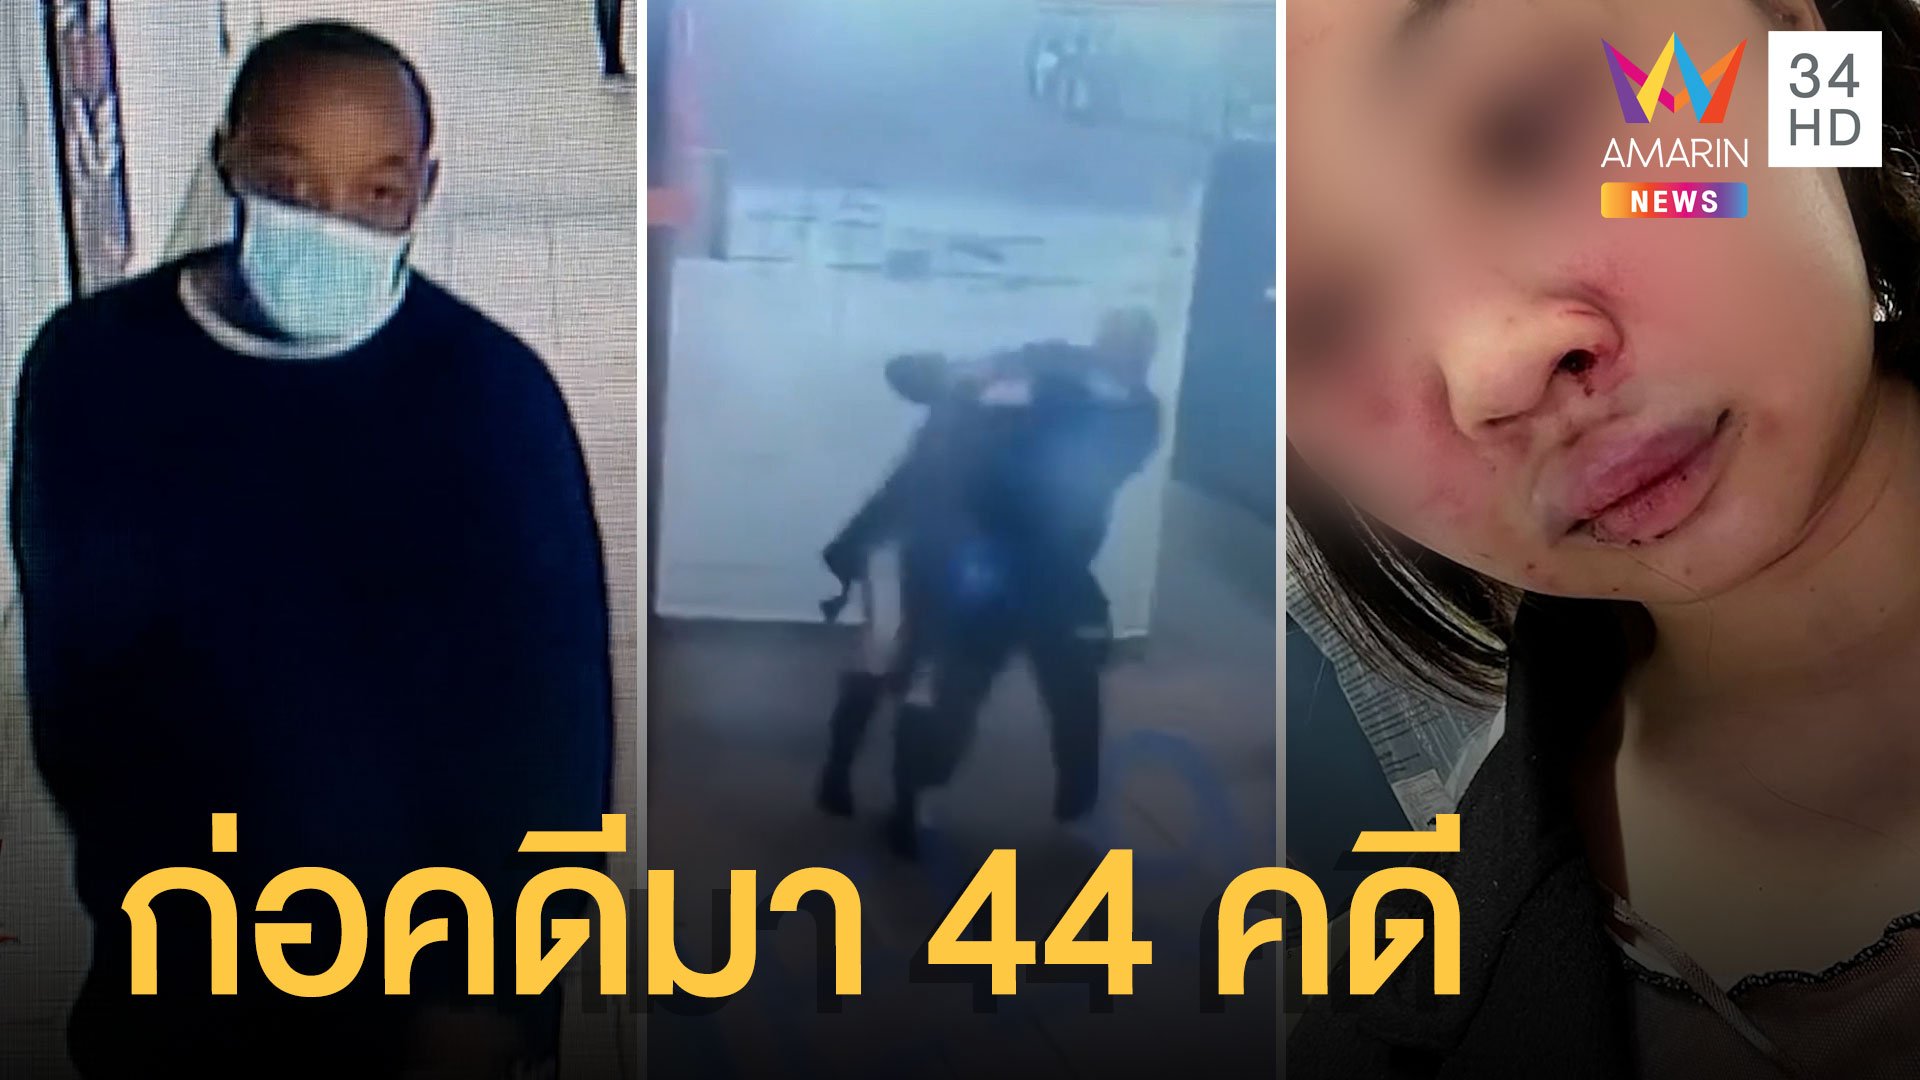 รวบแล้วหนุ่มก่อเหตุทำร้ายสาวไทย พบคดีติดตัว 44 คดี | ข่าวอรุณอมรินทร์ | 16 ก.พ. 65 | AMARIN TVHD34